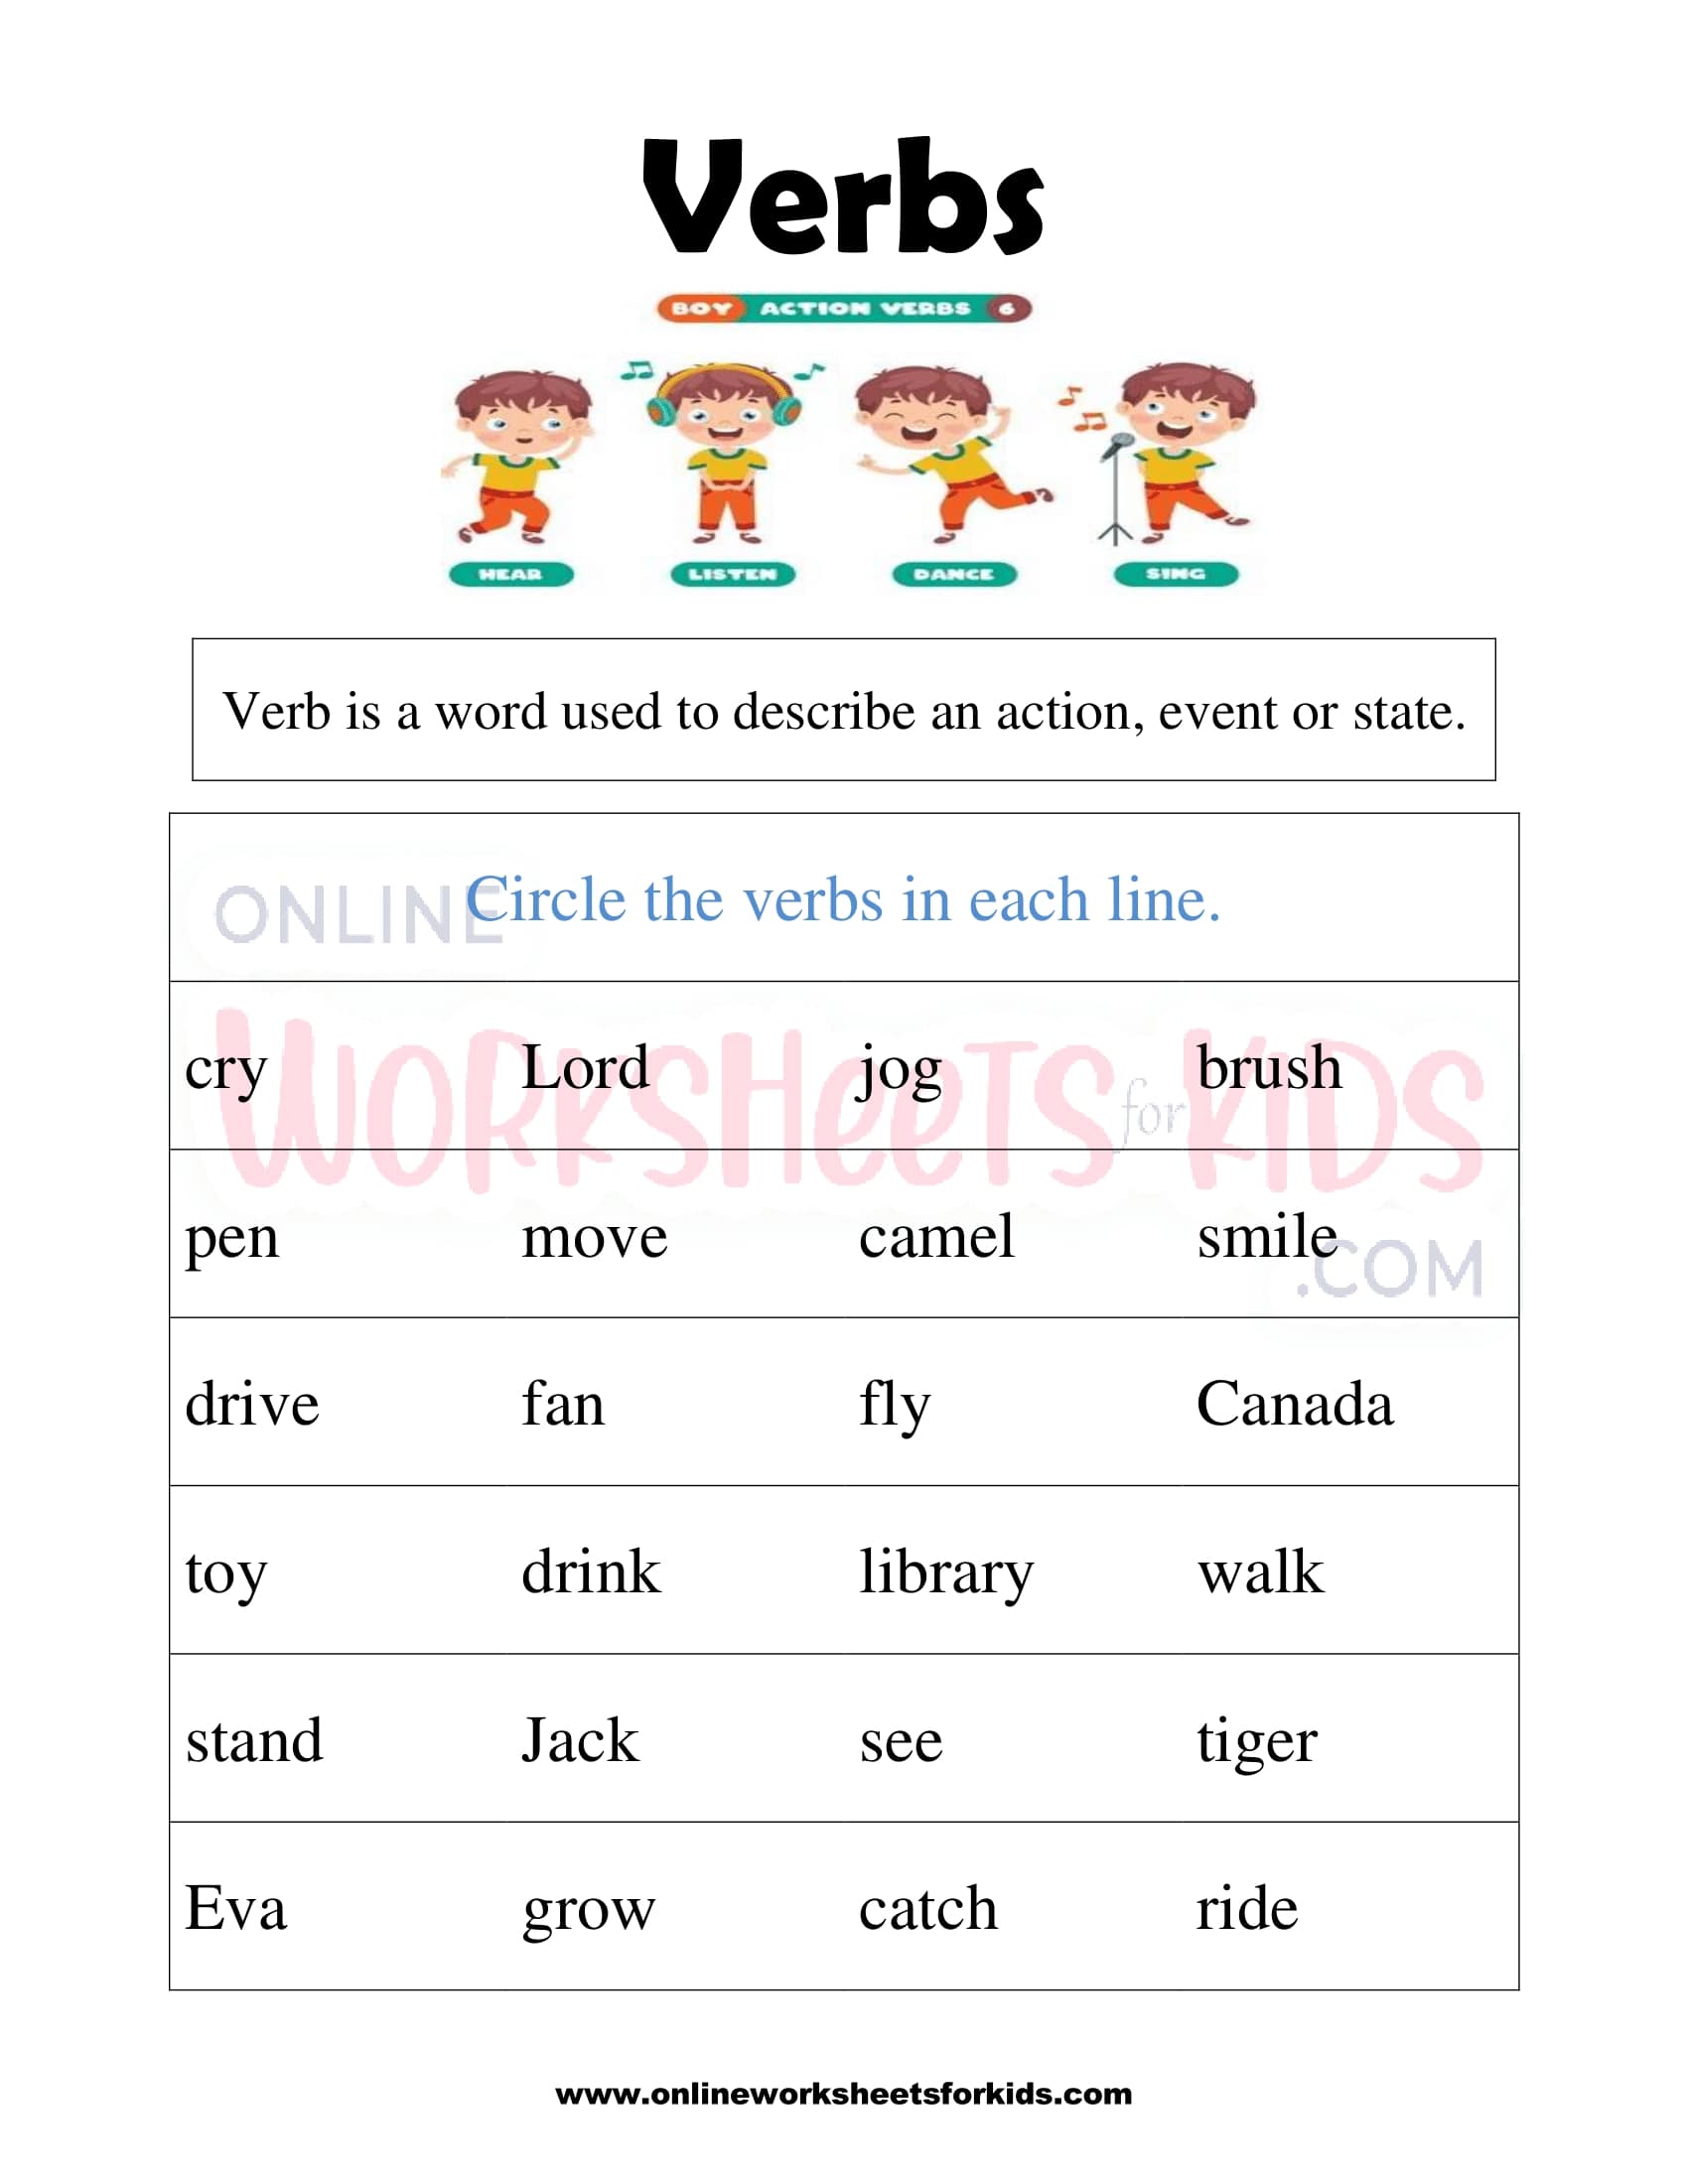 nouns-verbs-and-adjectives-free-grammar-worksheet-for-fourth-grade-nouns-worksheet-4th-grade